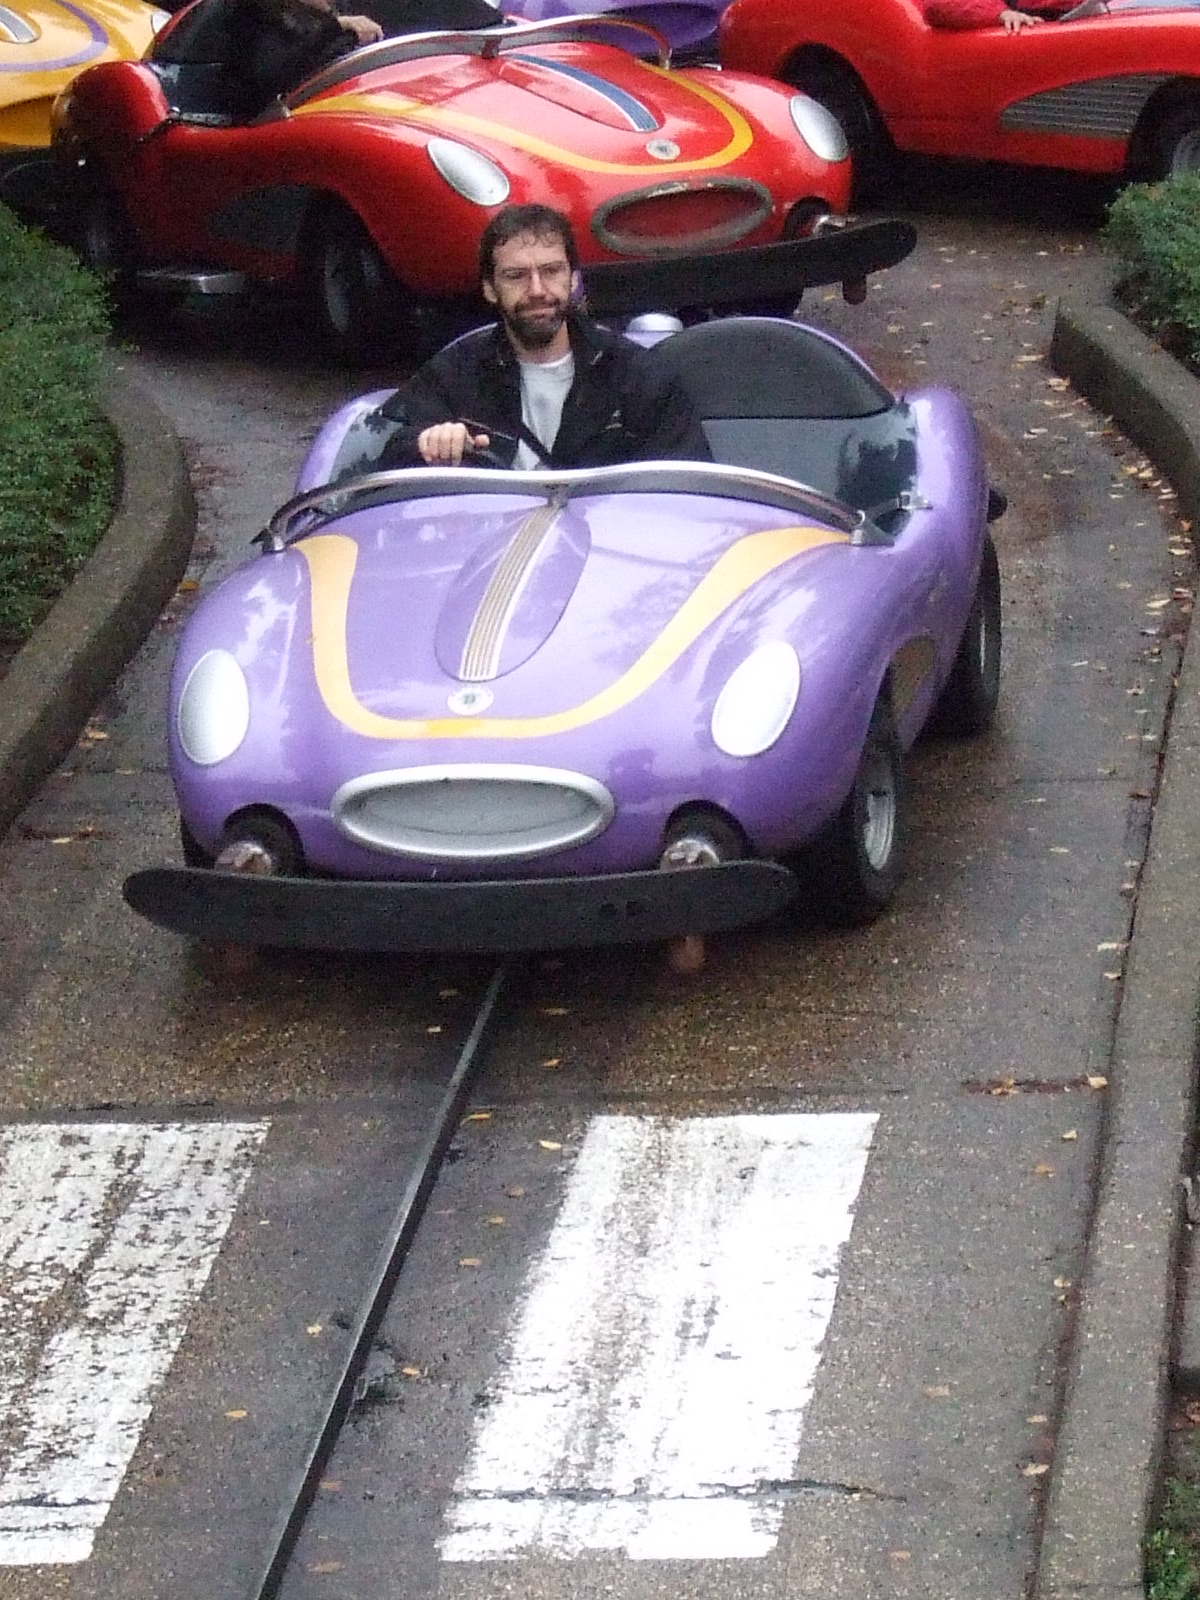 Photo 8 - c3po75 et sa voiture violette